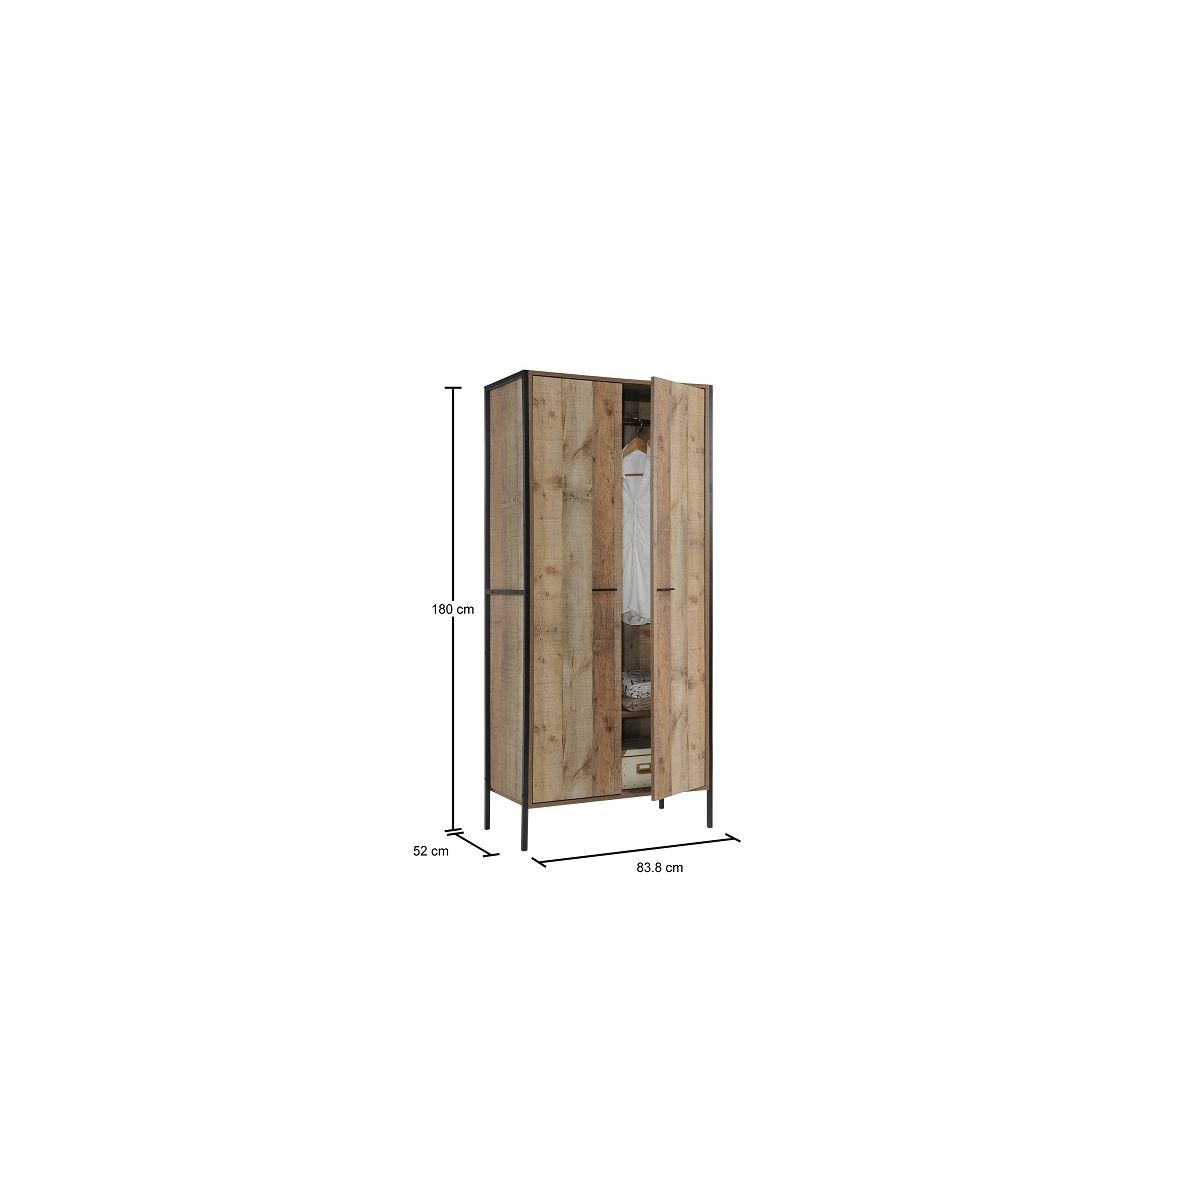 Stretton 2 Door Double Wardrobe - Rustic Oak